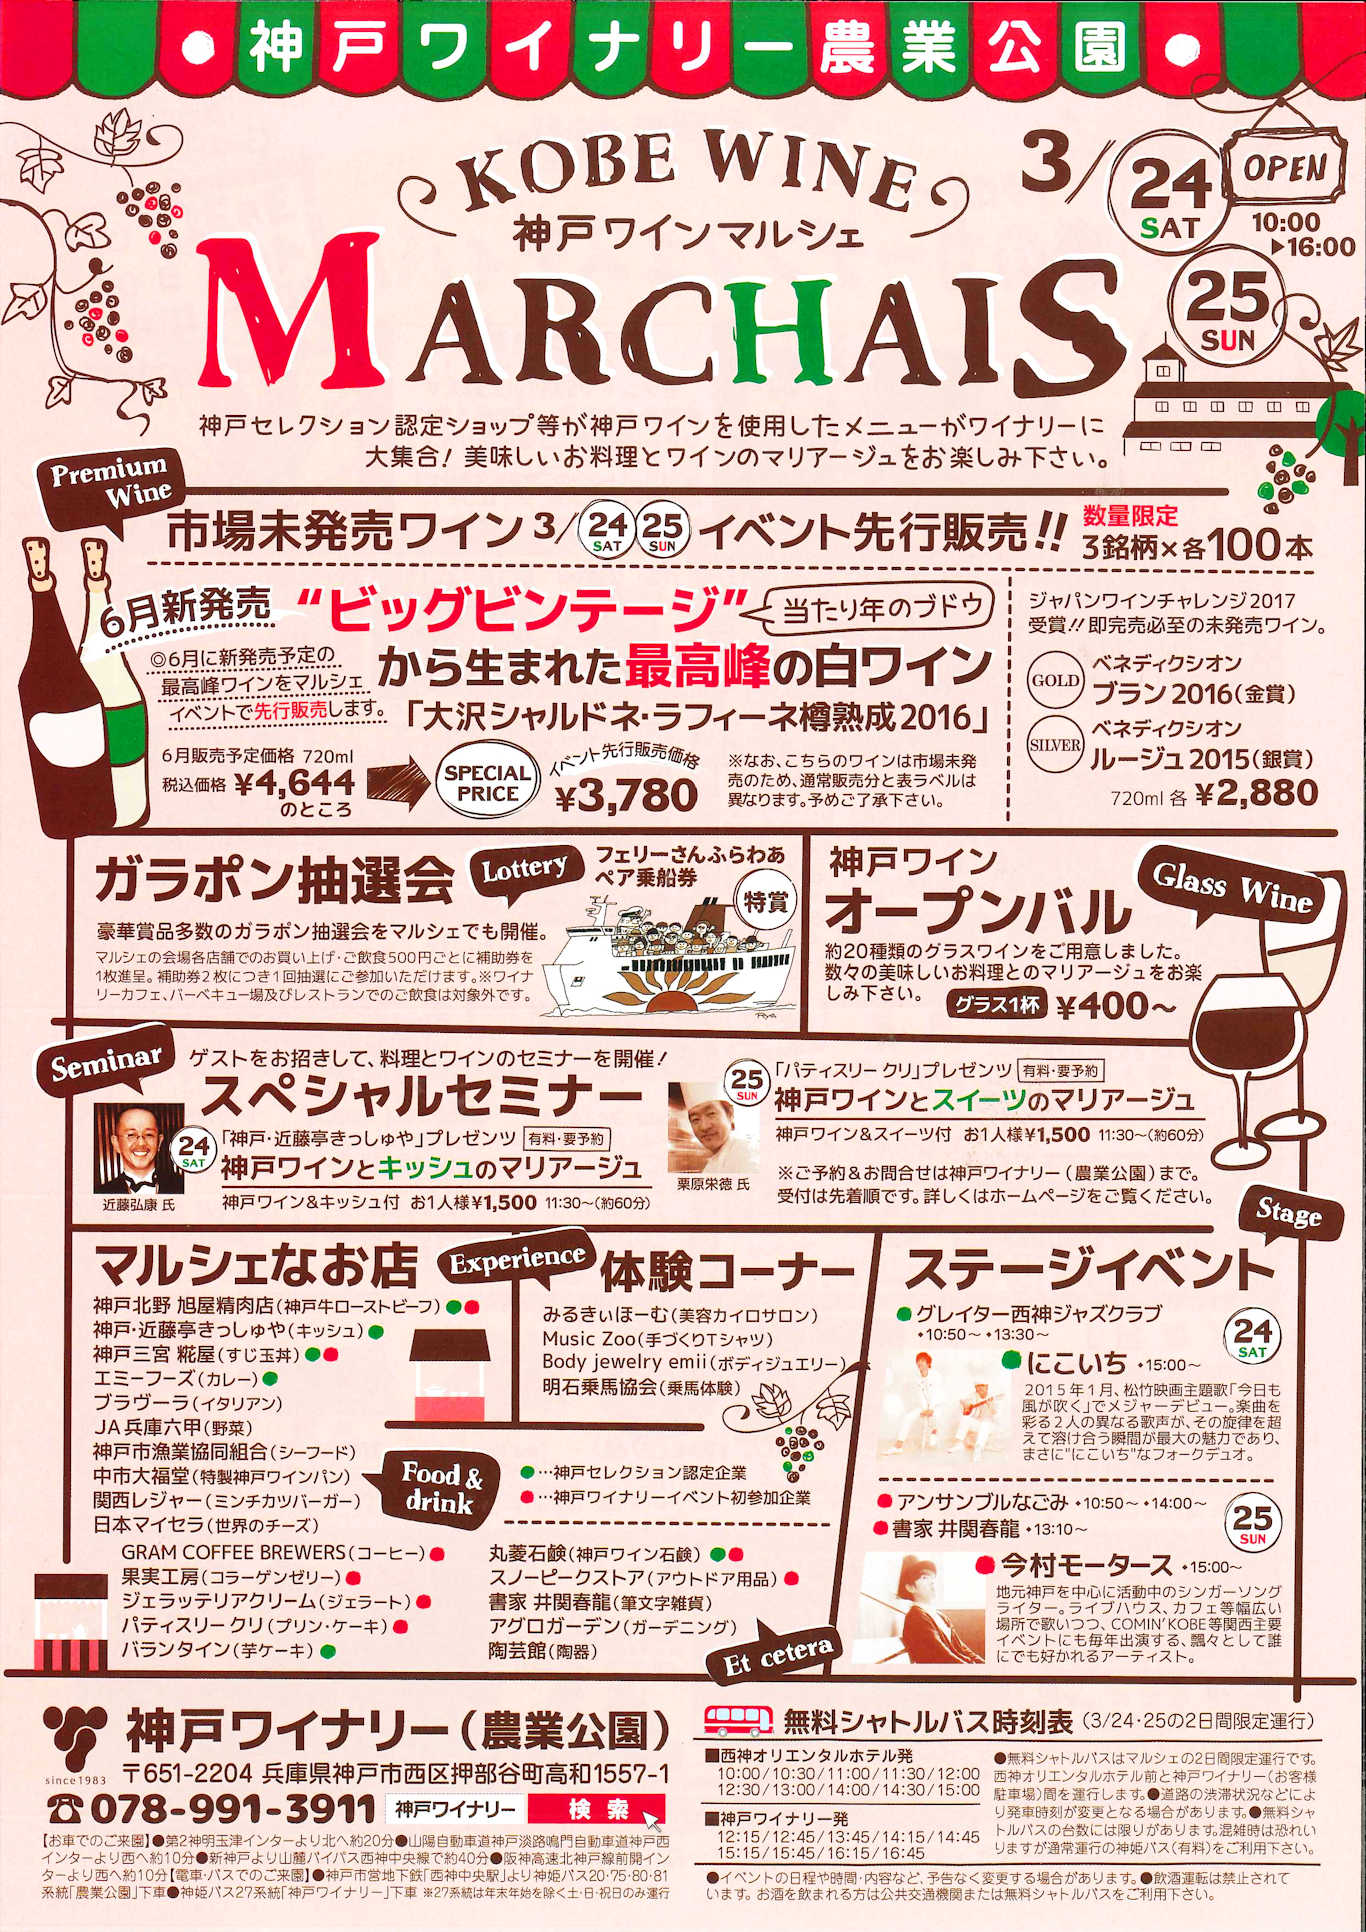 神戸ワインマルシェのパンフレット